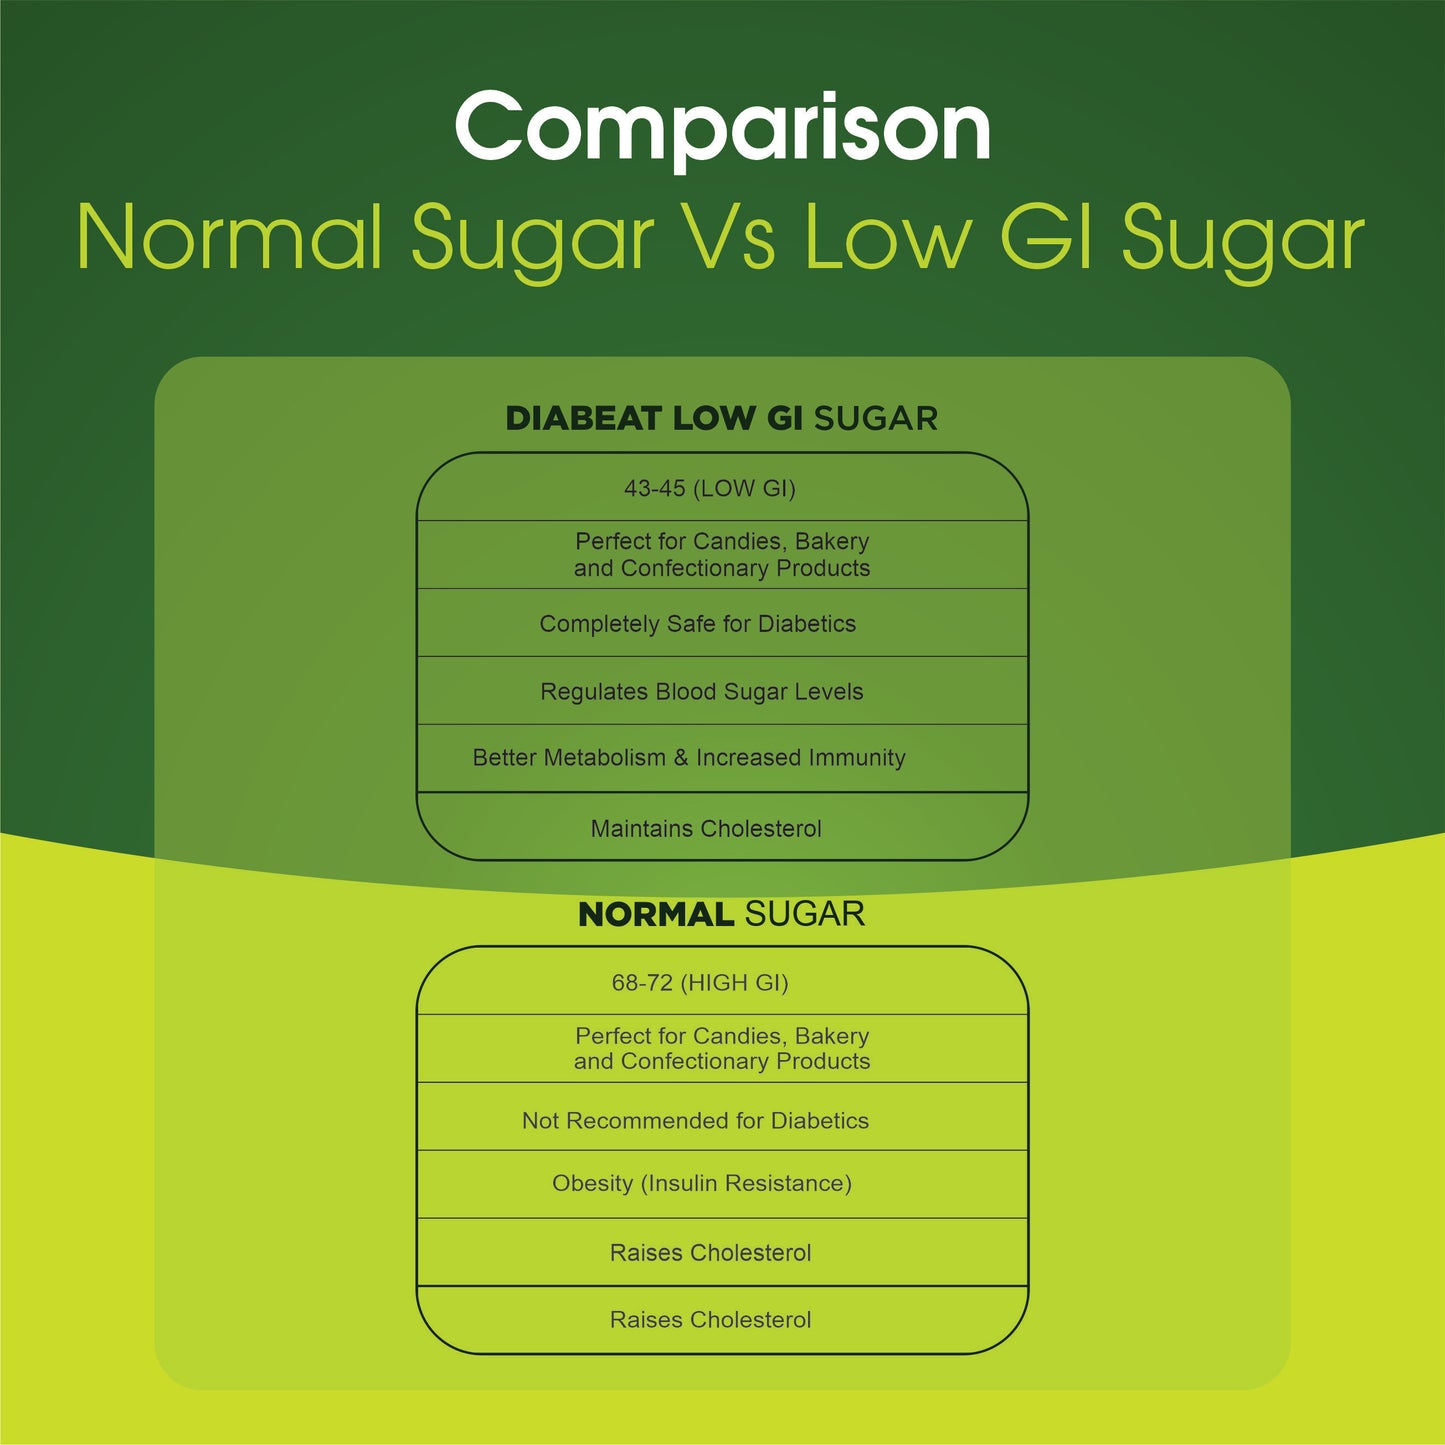 Normal sugar vs Low GI sugar